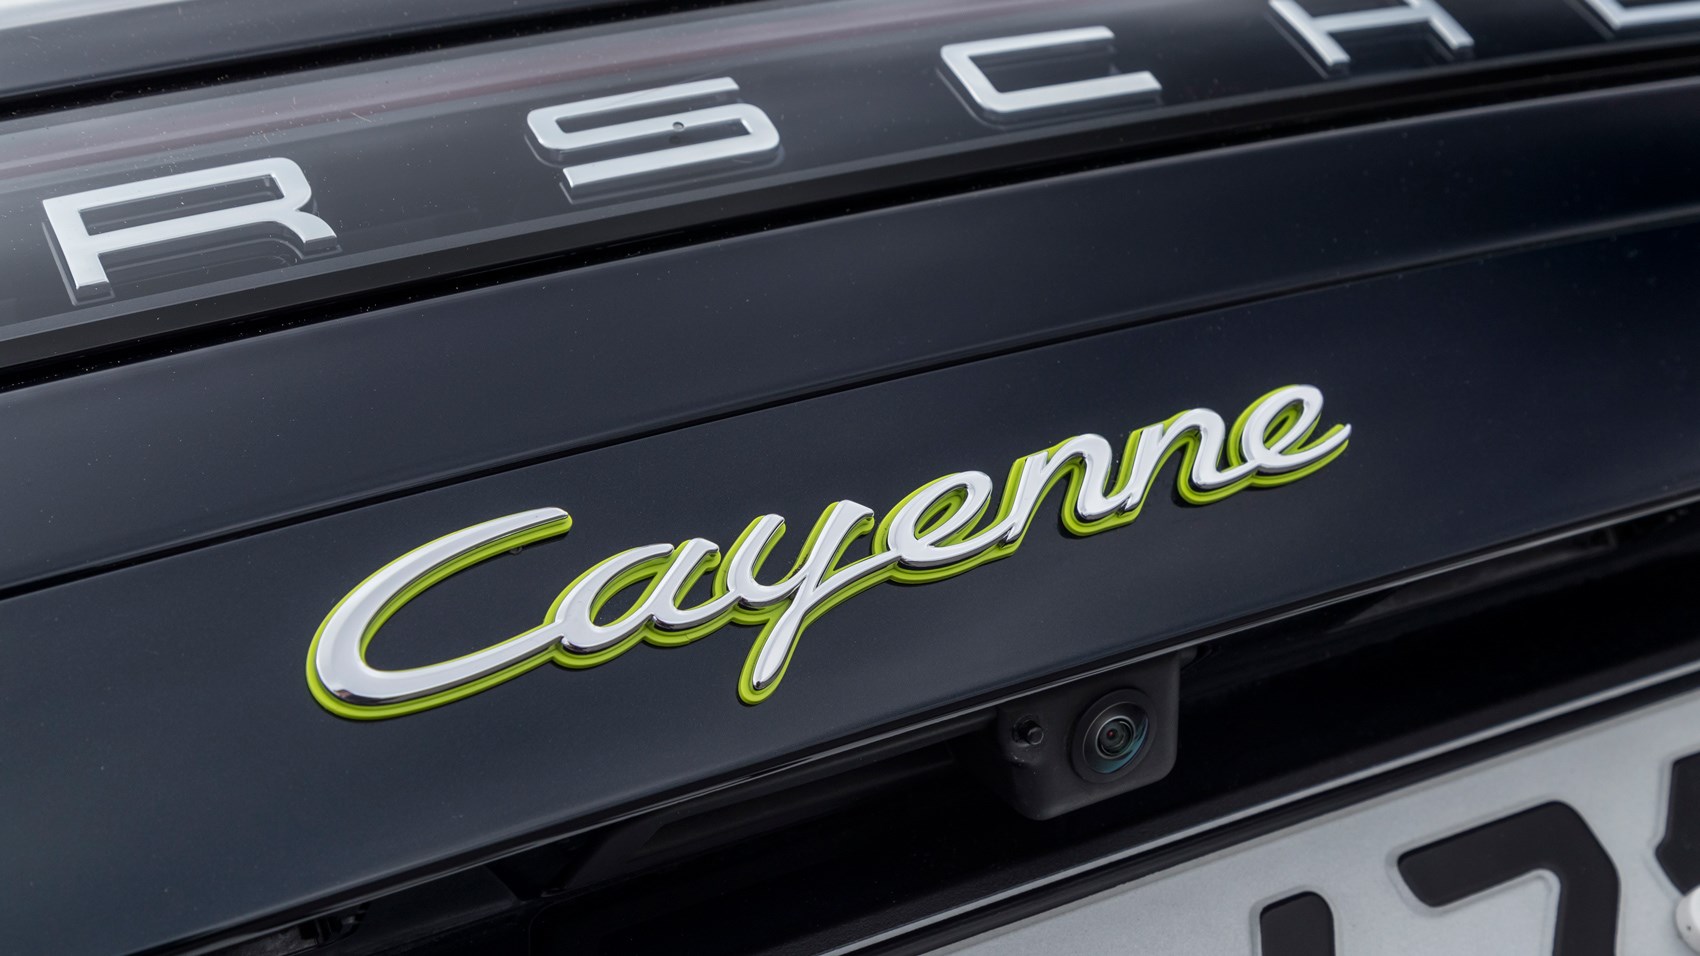 Porsche Cayenne E Hybrid 2018 Suv Review Suv Plugs In